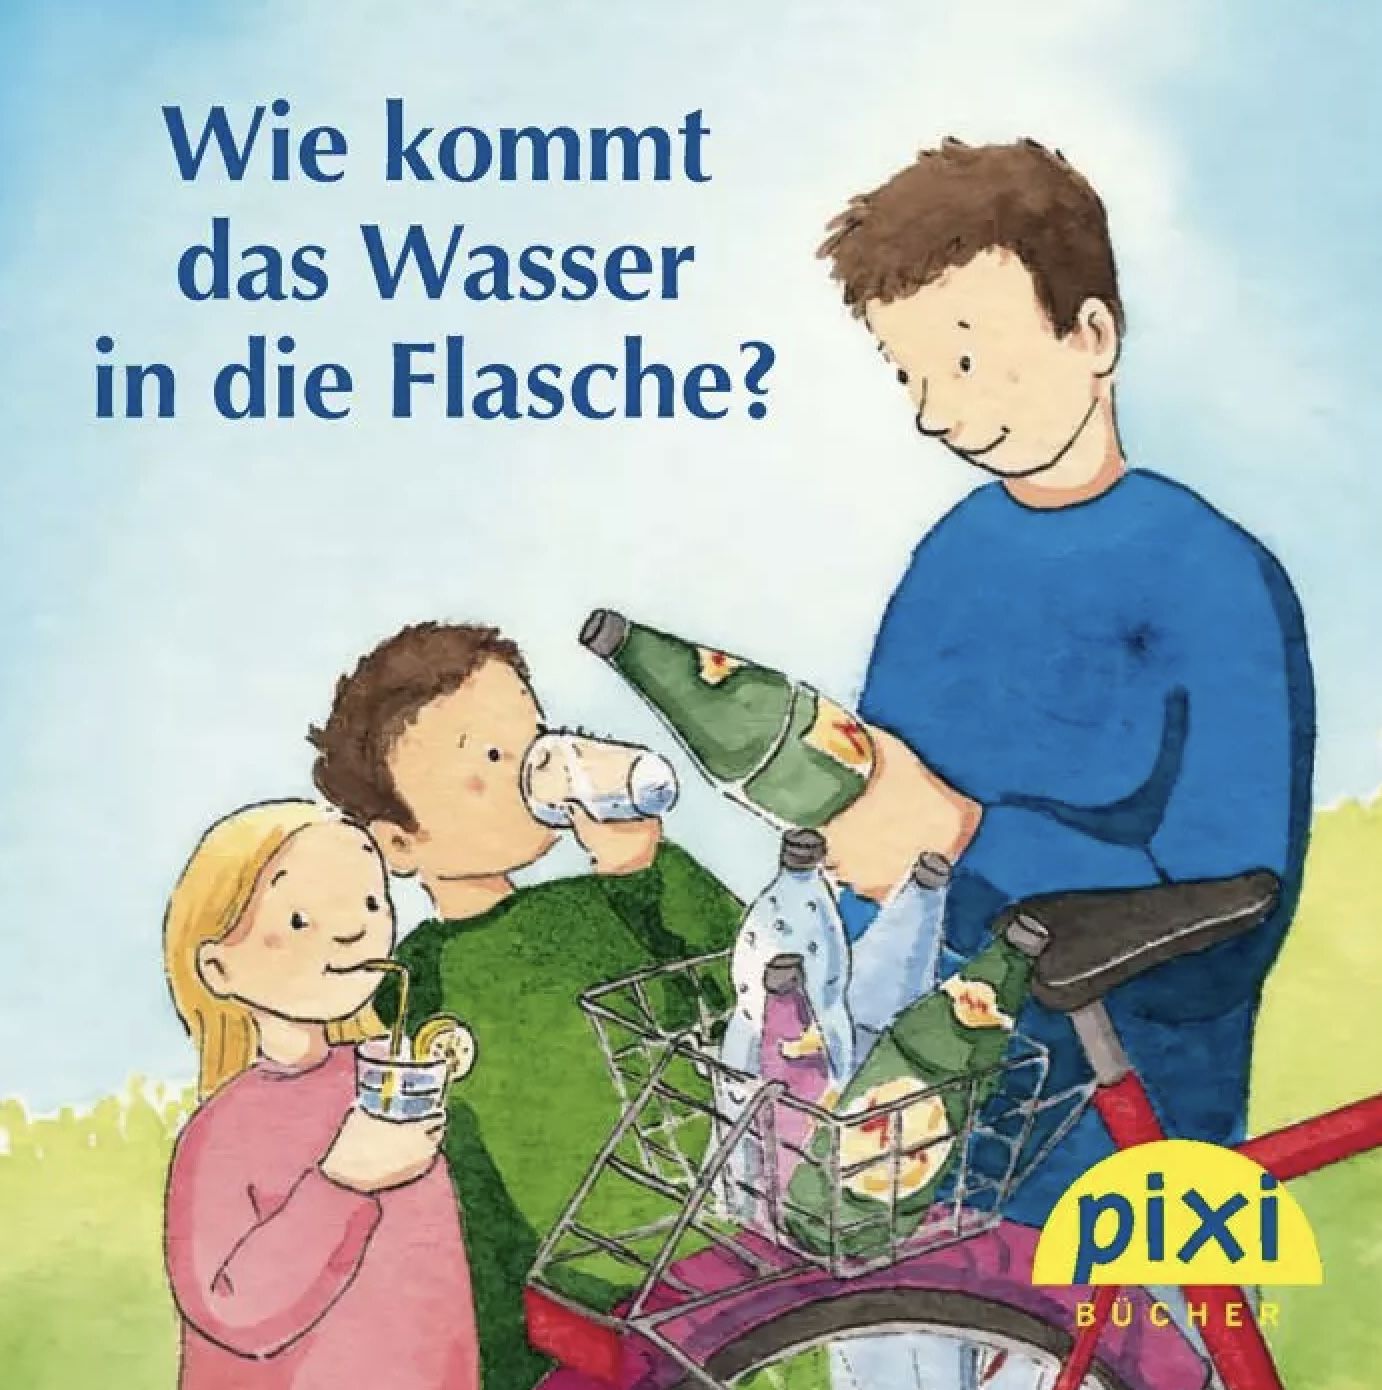 Pixi Buch Wie kommt das Wasser in die Flasche? gratis